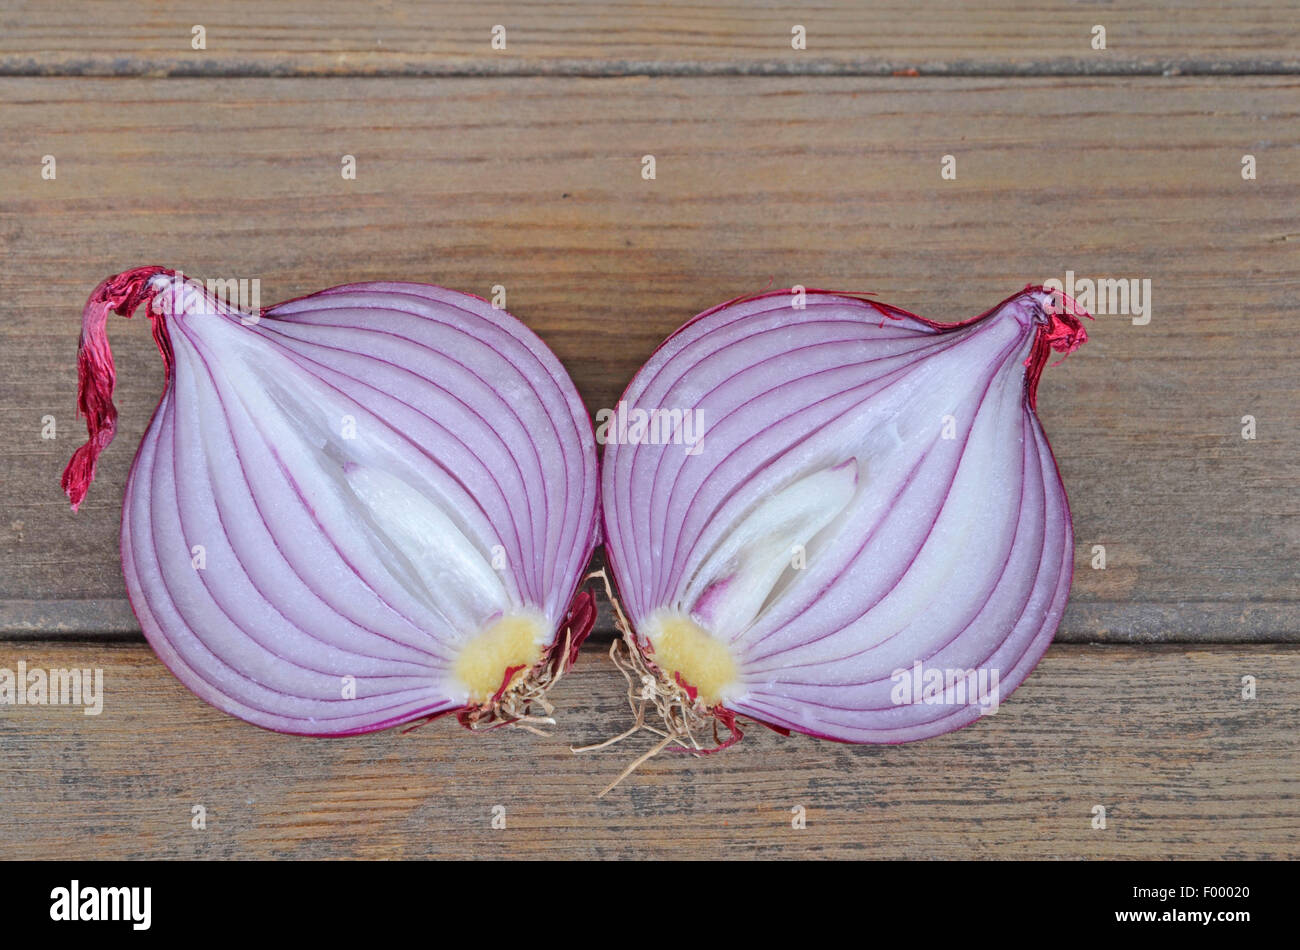 Garten-Zwiebel, Birne Zwiebel, gemeinsame Zwiebel (Allium Cepa), frischen roten Zwiebeln längs geschnitten Stockfoto